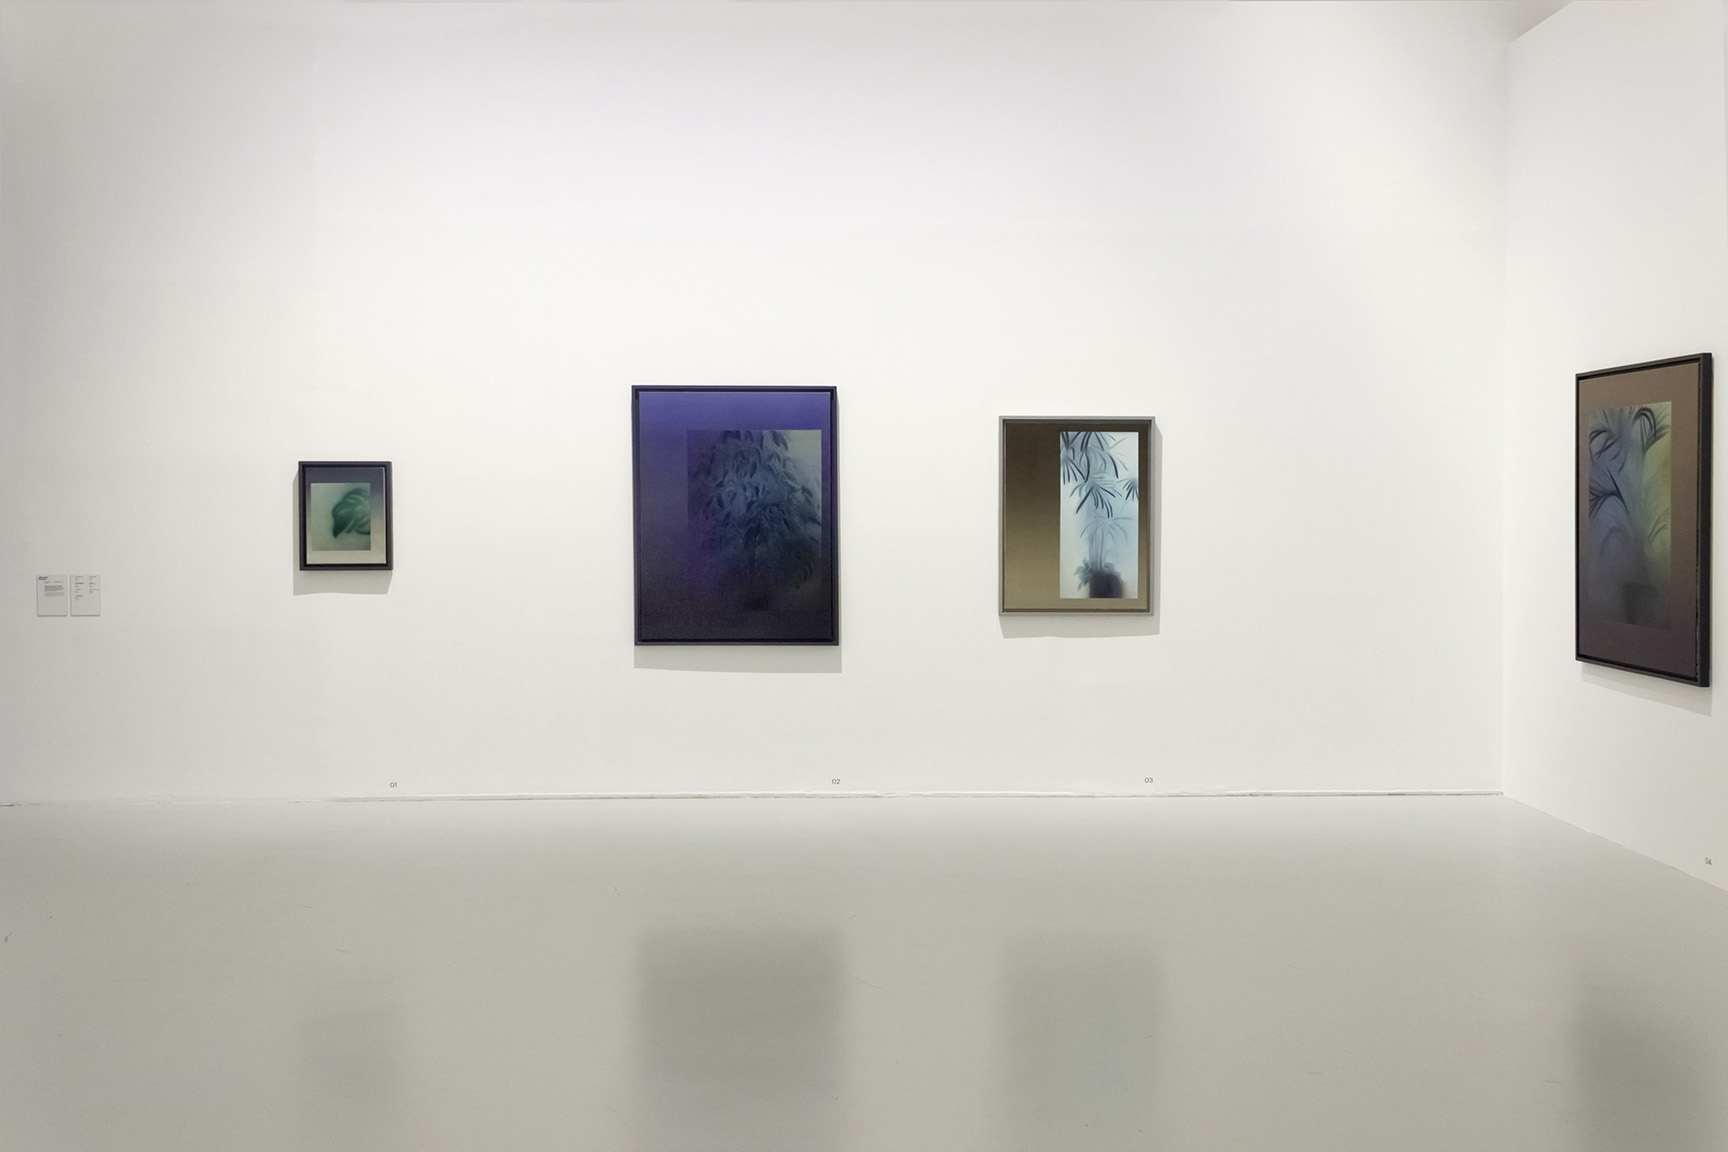 Clément Davout, exhibition view 3, 2020